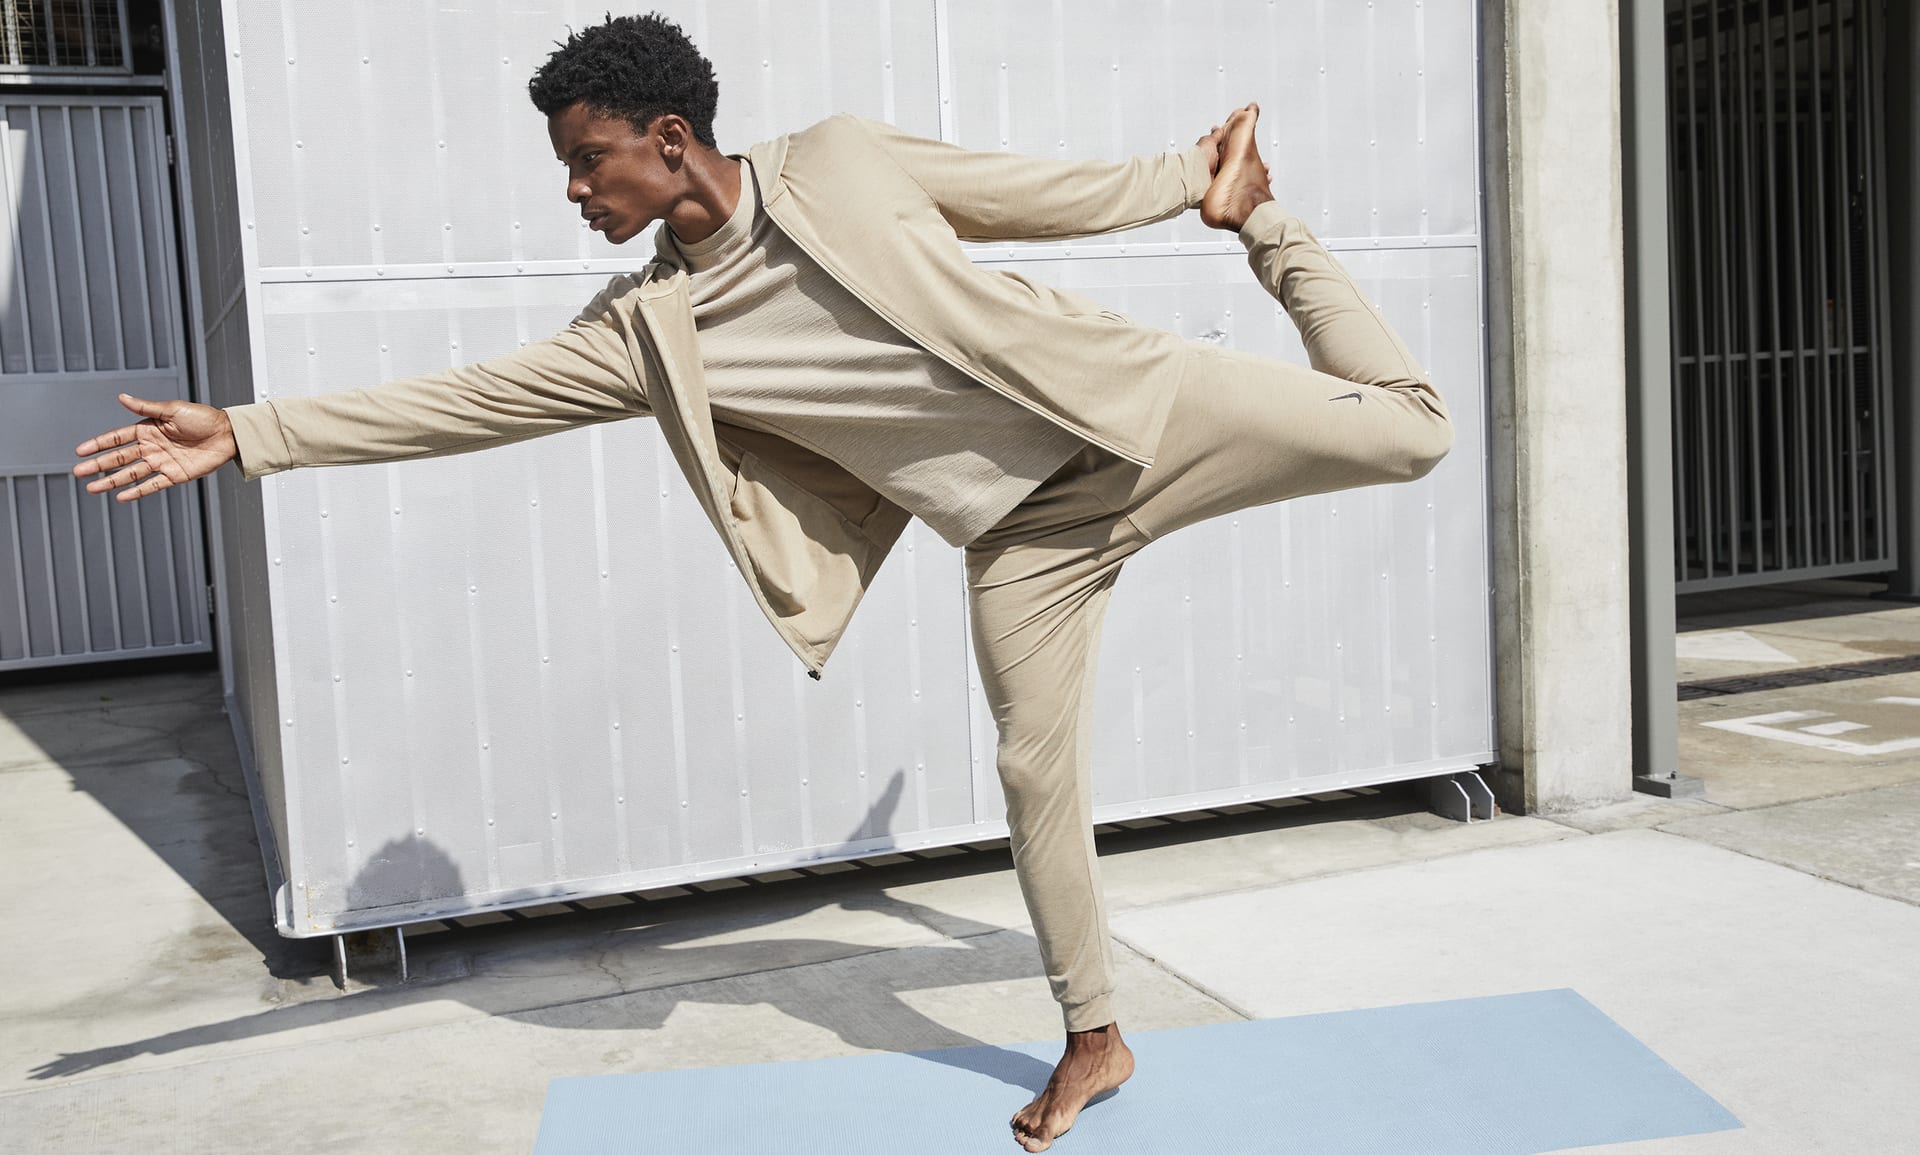 Nike Men's Dri-fit Flex Tapered Yoga Pants In Grey